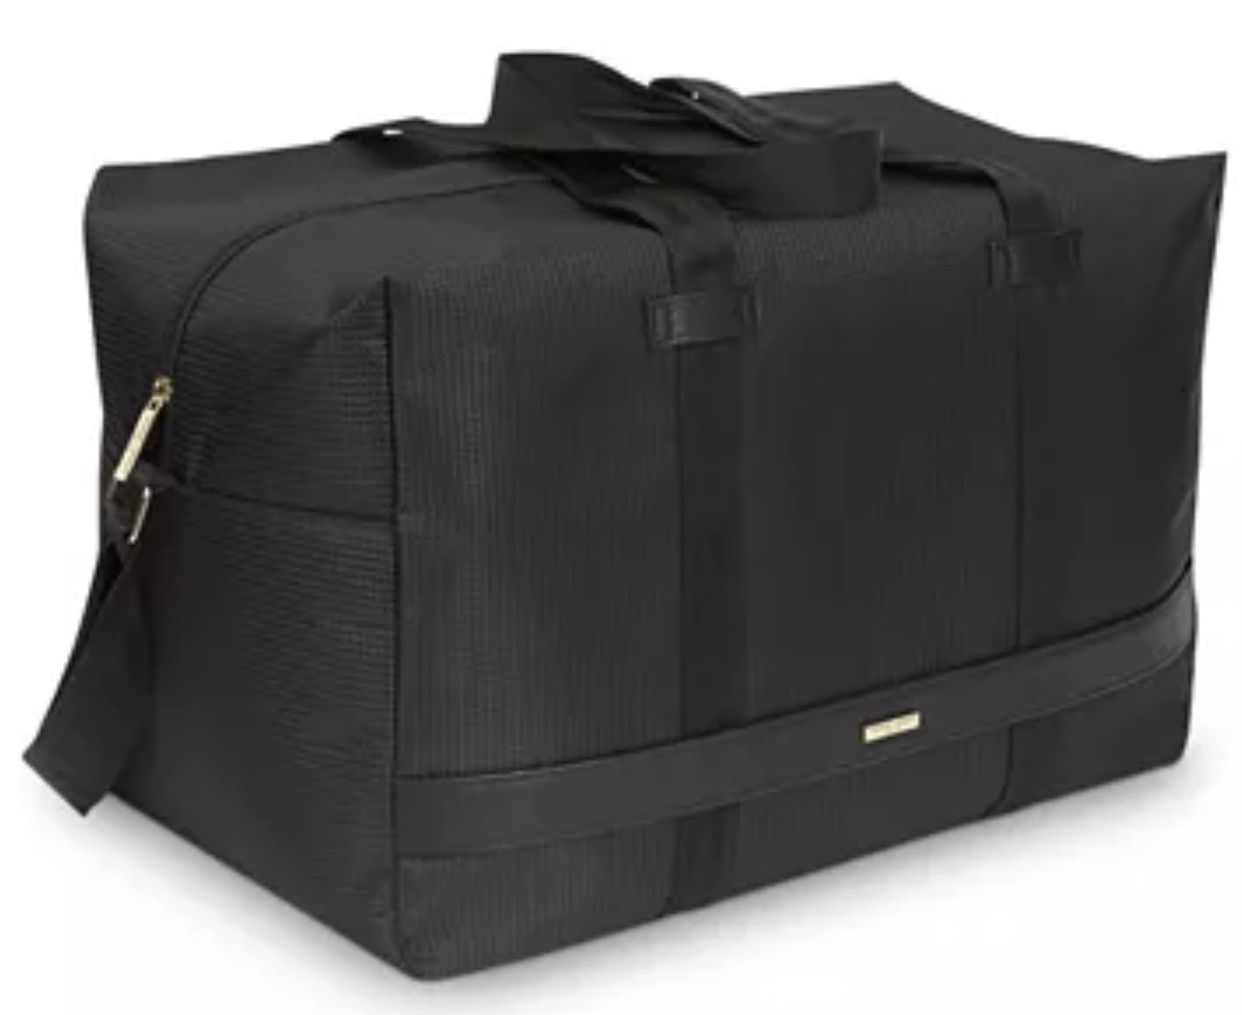 GIORGIO ARMANI Duffle Bag--Brand New Sealed